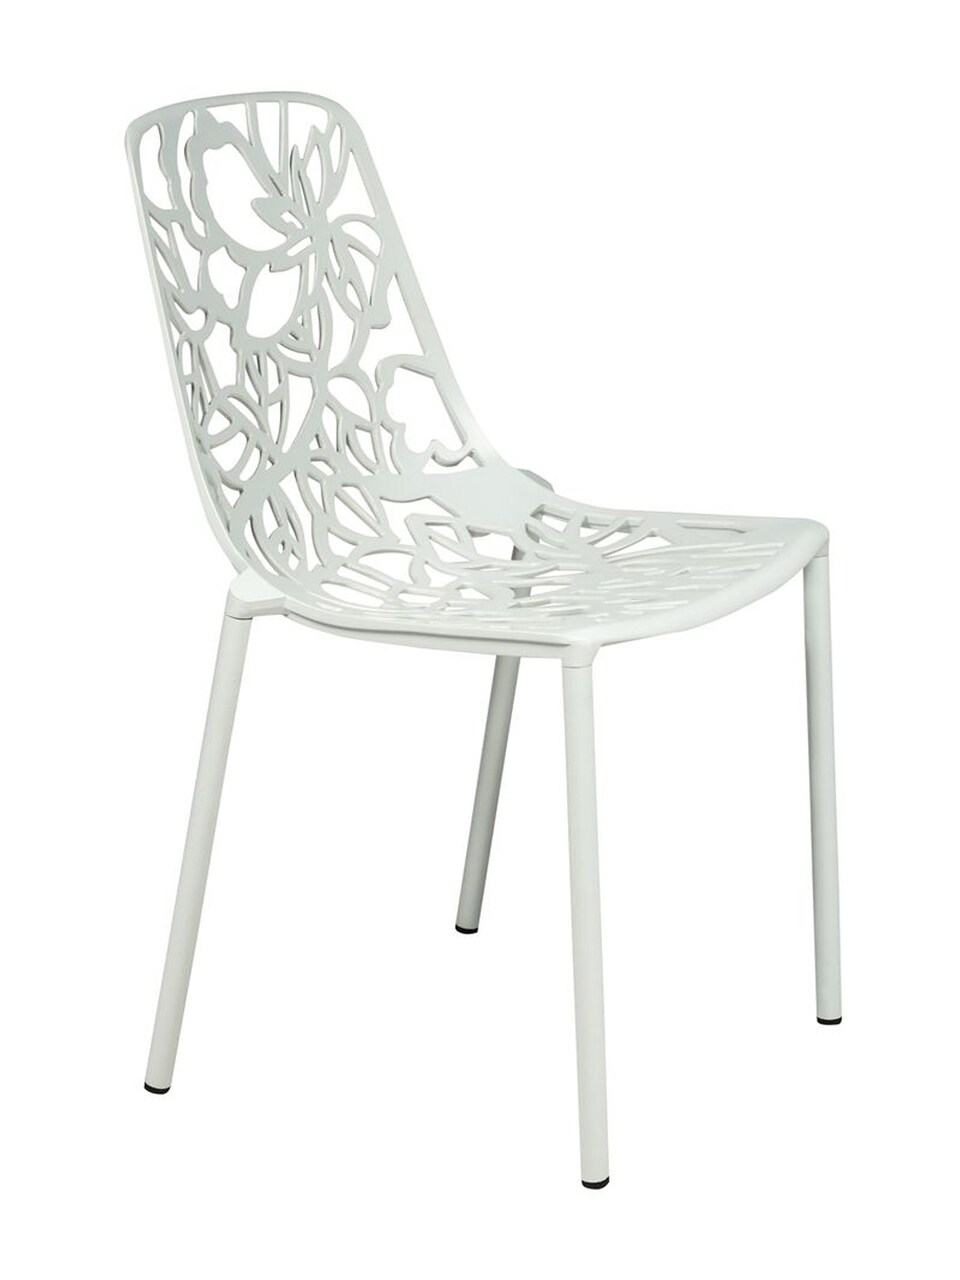 LeisureMod Modern Devon Aluminum Chair